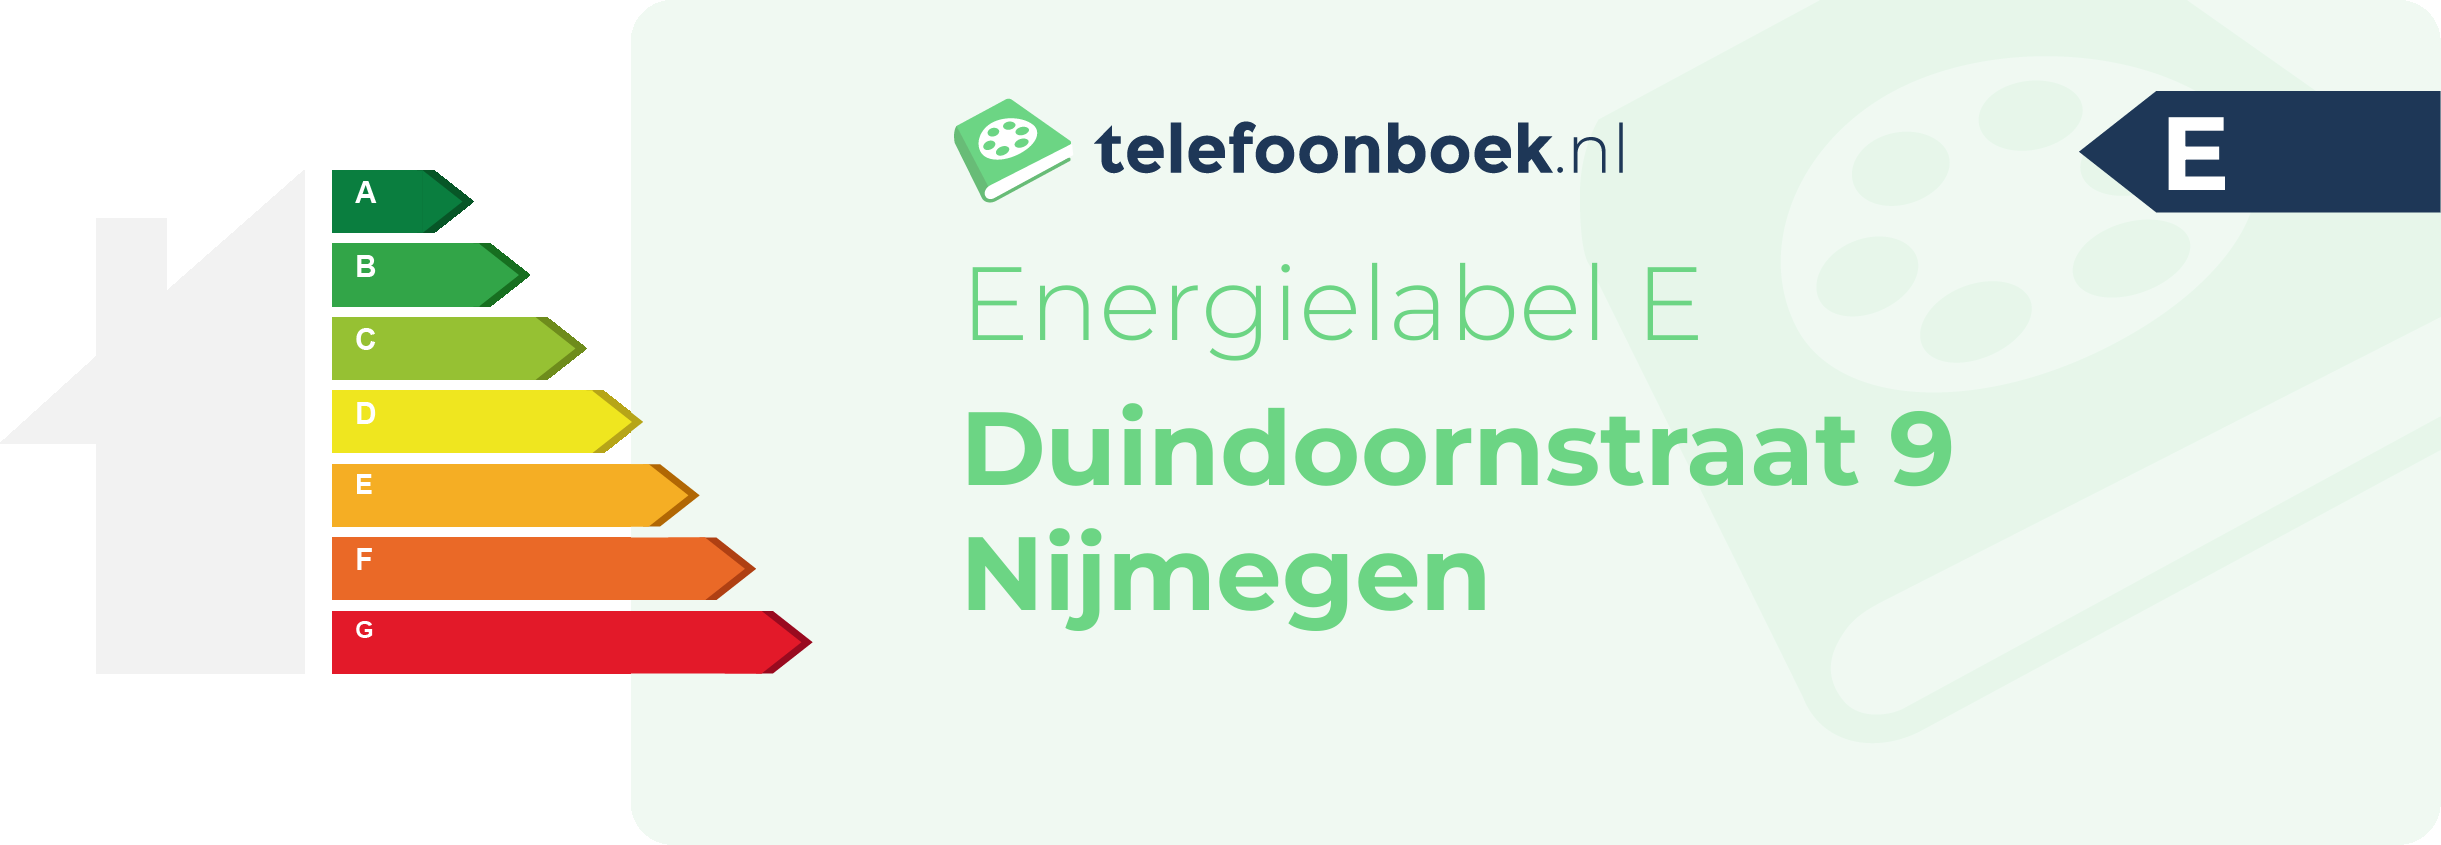 Energielabel Duindoornstraat 9 Nijmegen